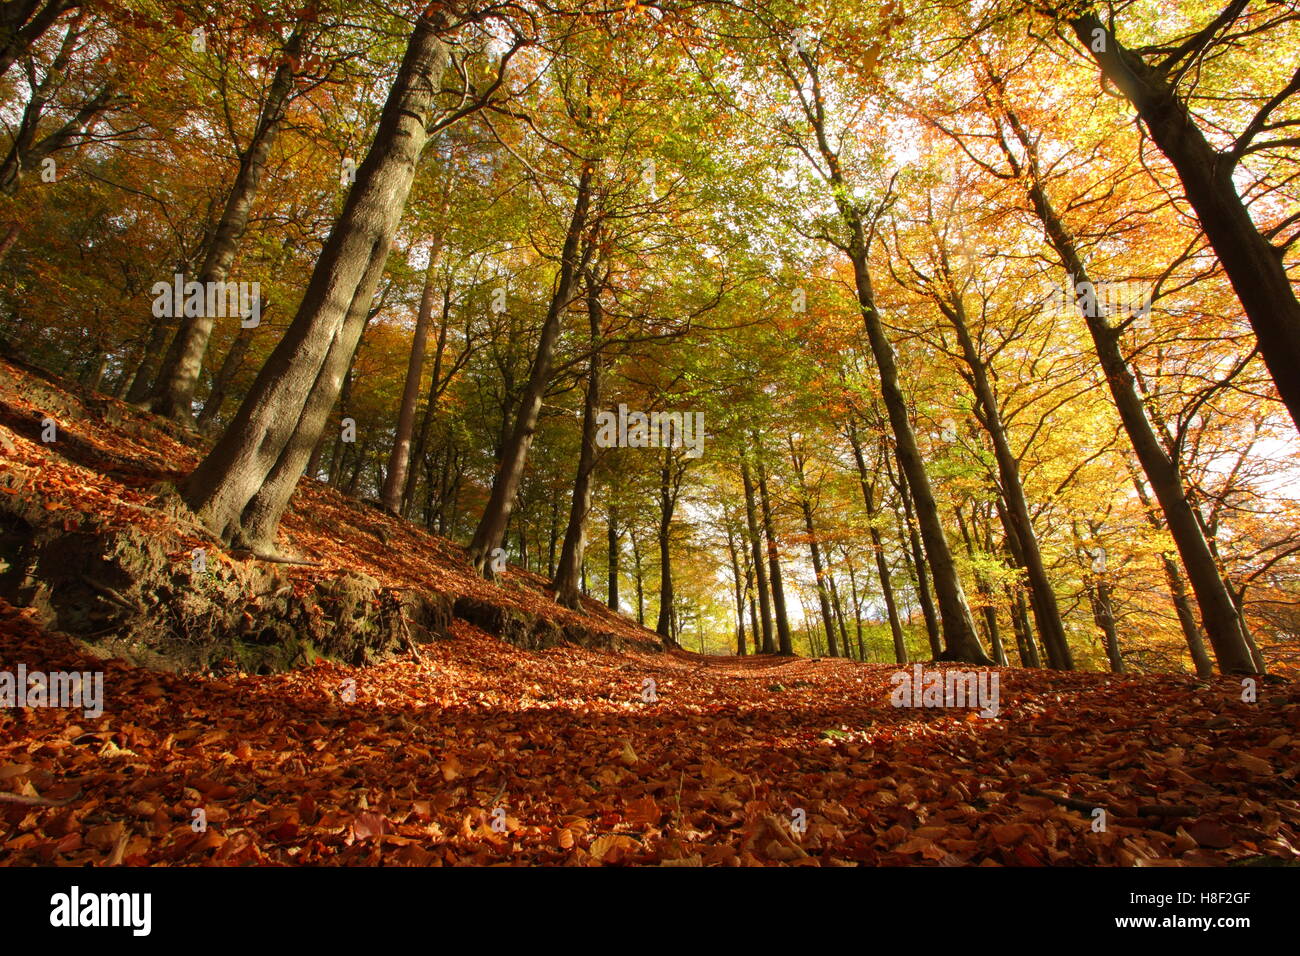 Sentier à travers le hêtre commun (Fagus sylvatica) woodland en plein automne couleur, Peak District, Derbyshire, Angleterre, Royaume-Uni Banque D'Images